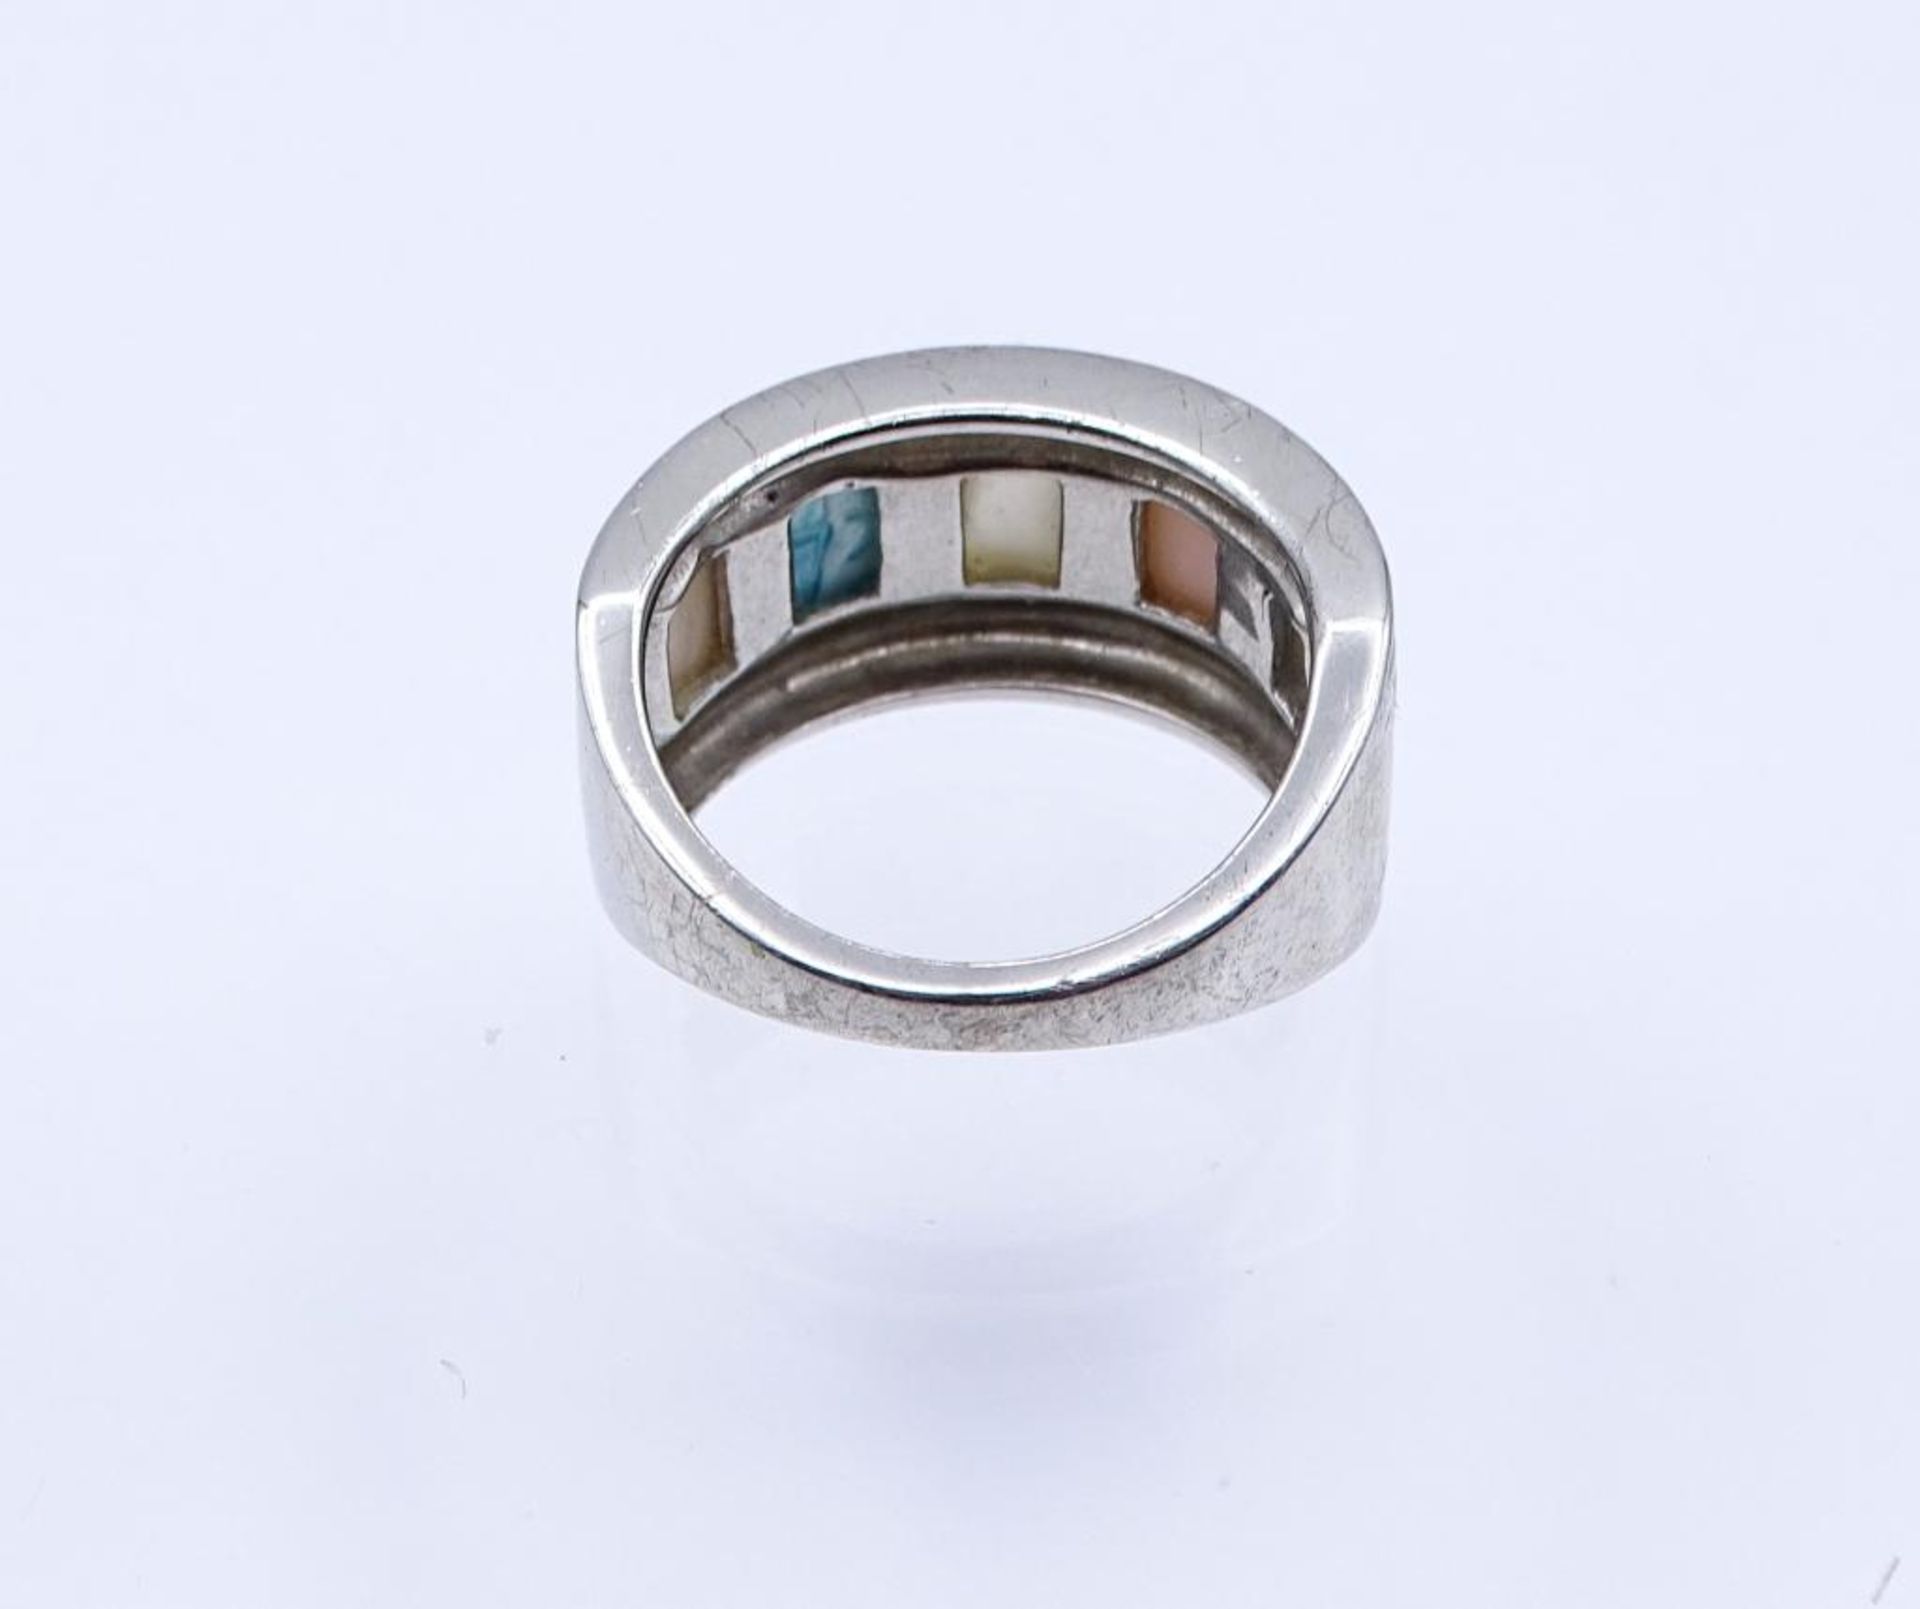 Silber Ring mit mehrfarbigen Perlmutt Besatz, Silber 7,9gr., RG 60- - -22.61 % buyer's premium on - Bild 3 aus 3